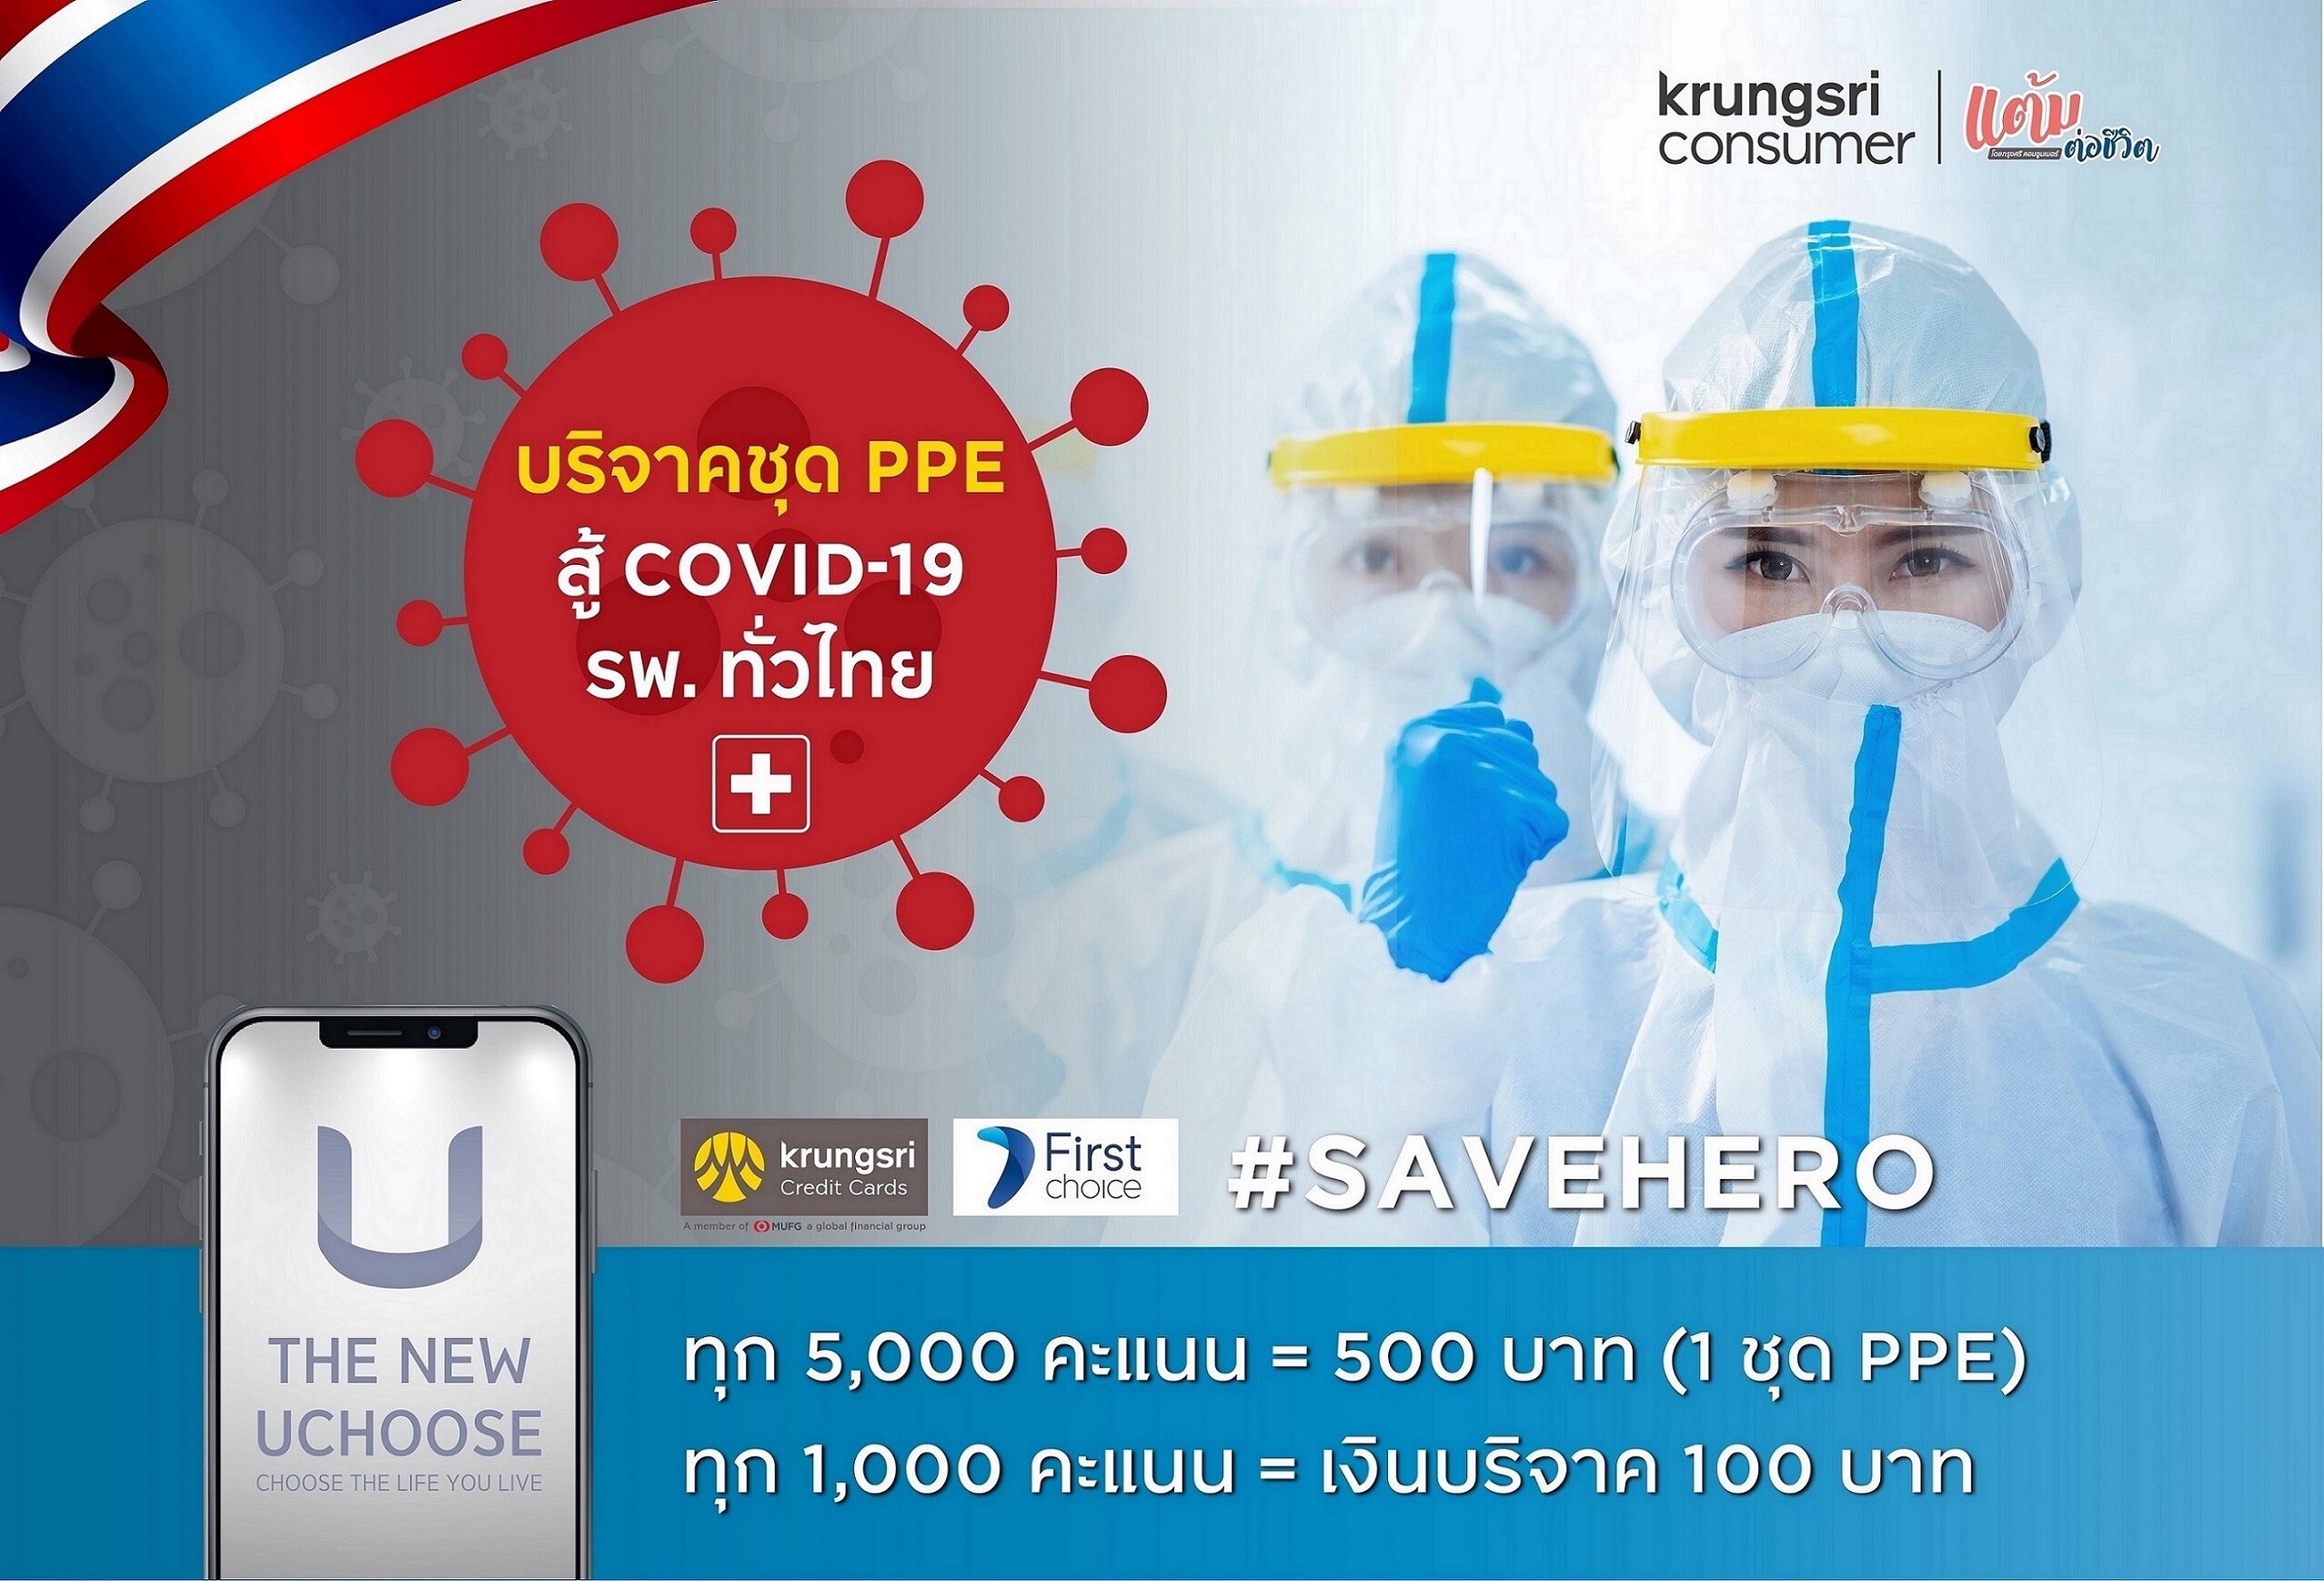 กรุงศรี คอนซูมเมอร์ เดินหน้า “โครงการแต้มต่อชีวิต” ชวนแลกแต้มบัตรเครดิตบริจาคชุด PPE มอบโรงพยาบาลทั่วไทยสู้ภัย 'COVID-19’